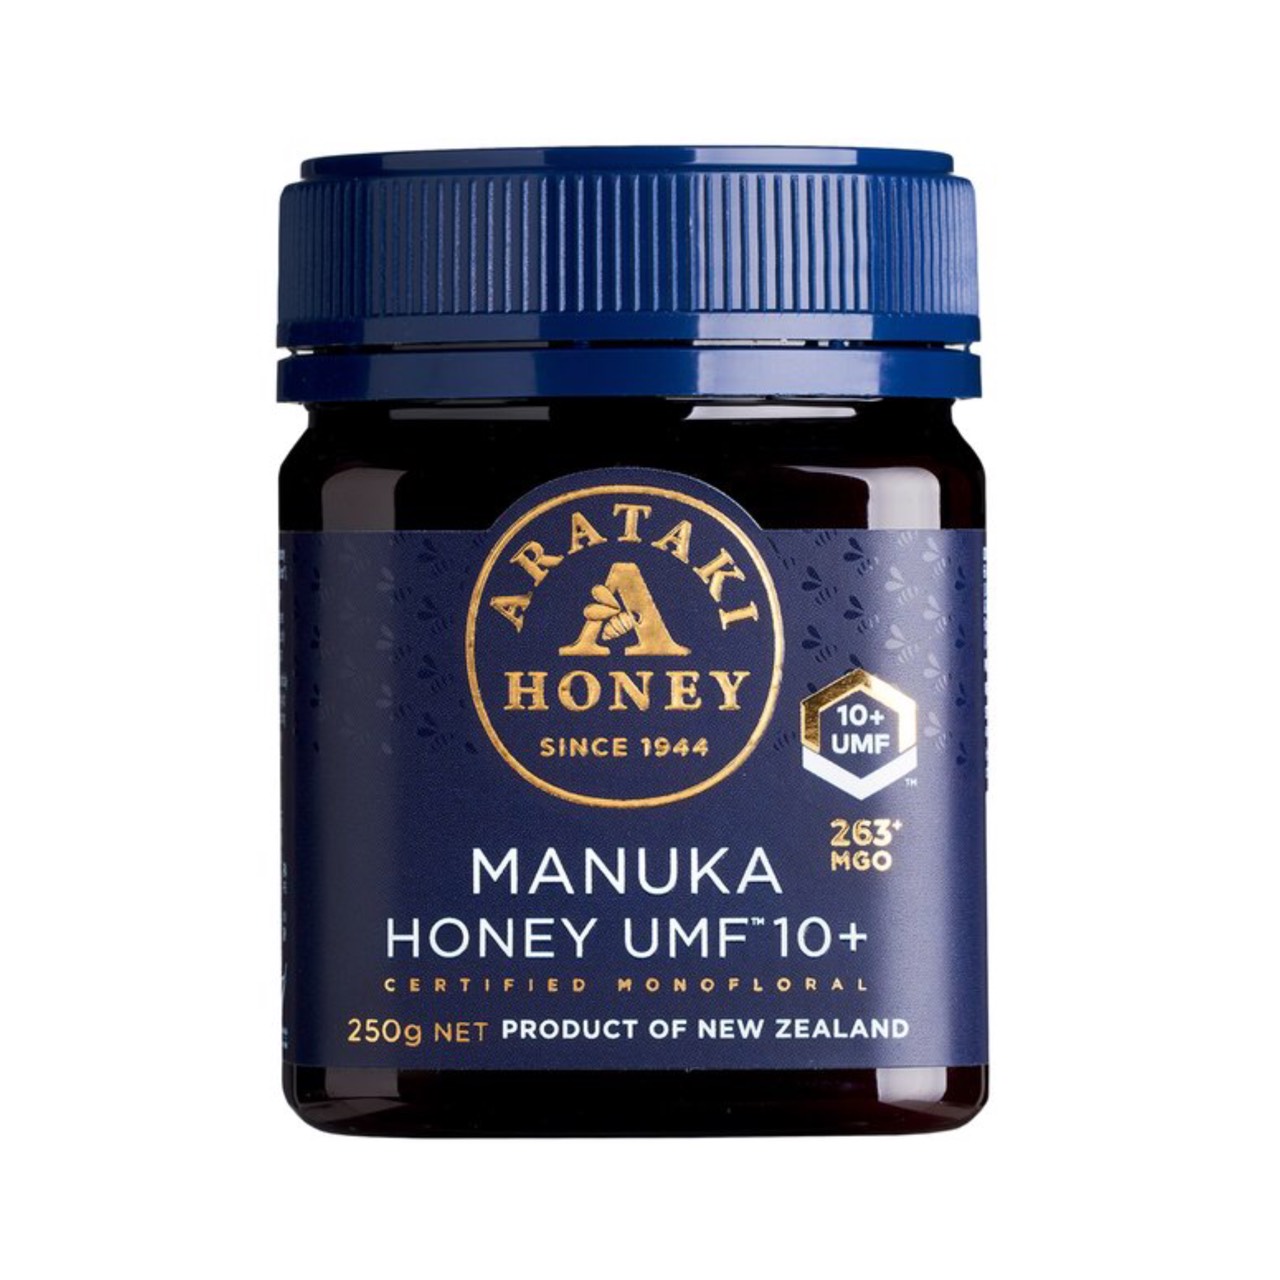 Arataki Manuka Honey UMF10+ (MGO263+) 250g น้ำผึ้งมานูก้า 100% จากประเทศนิวซีแลนด์ [Honey,Manuka,น้ำผึ้งแท้]